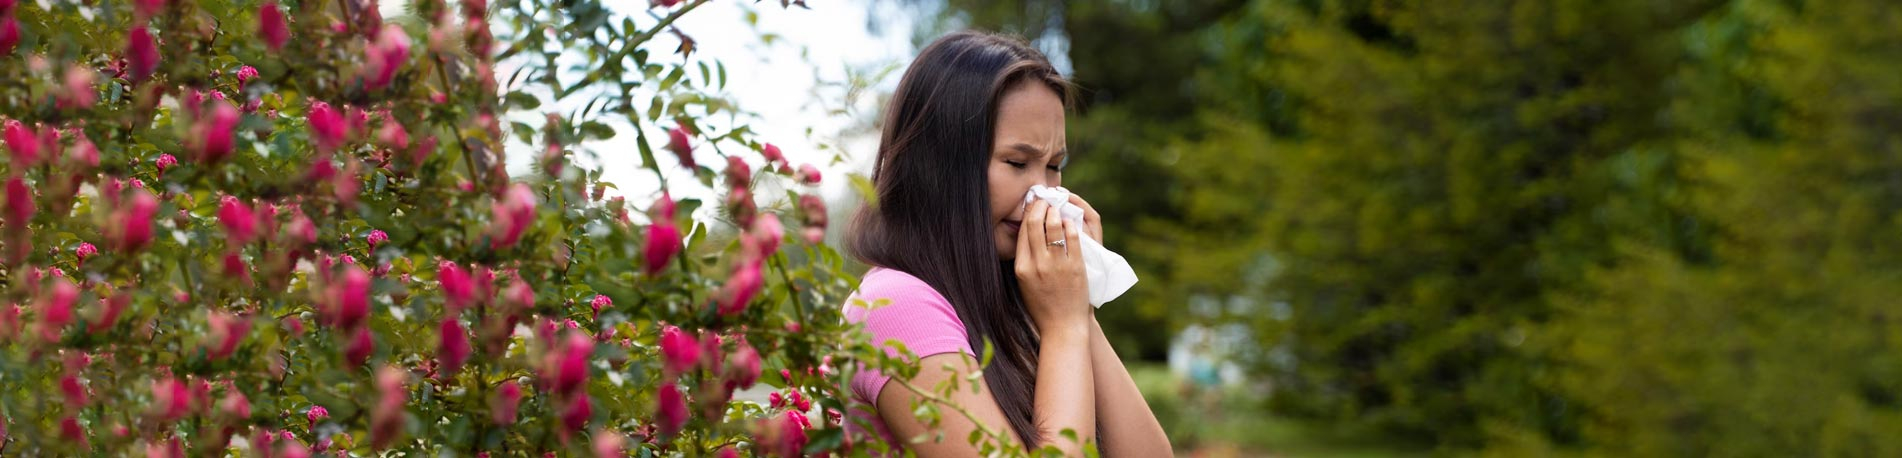 L'homéopathie contre les allergies saisonnières